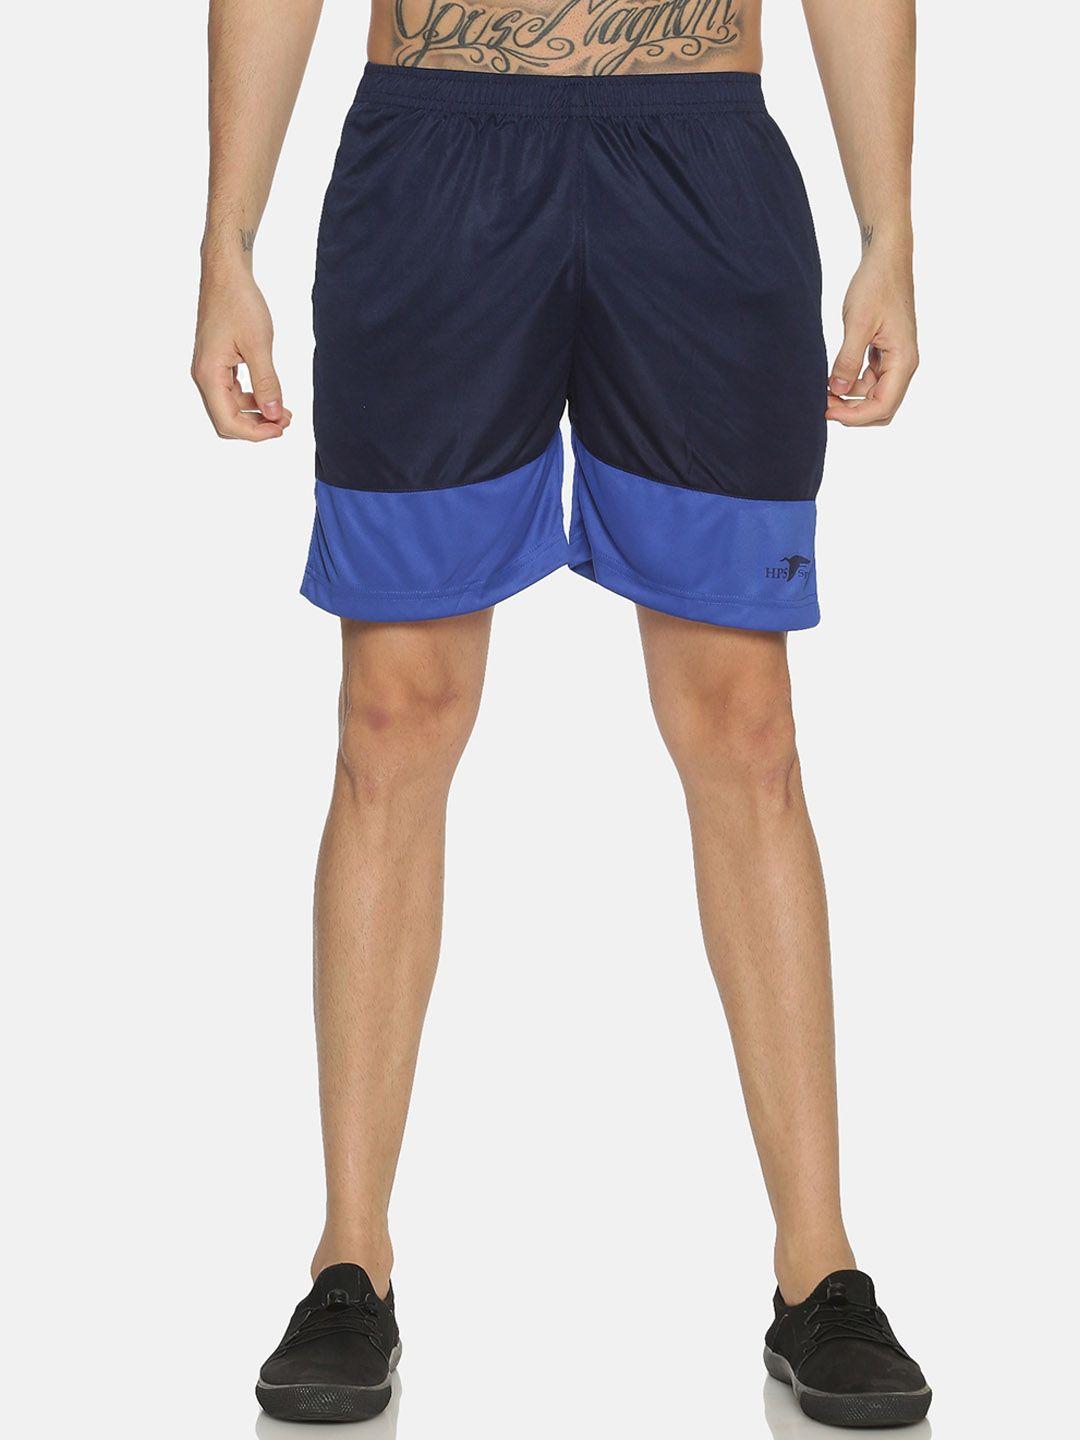 hps sports men black & blue colourblocked slim fit sports shorts